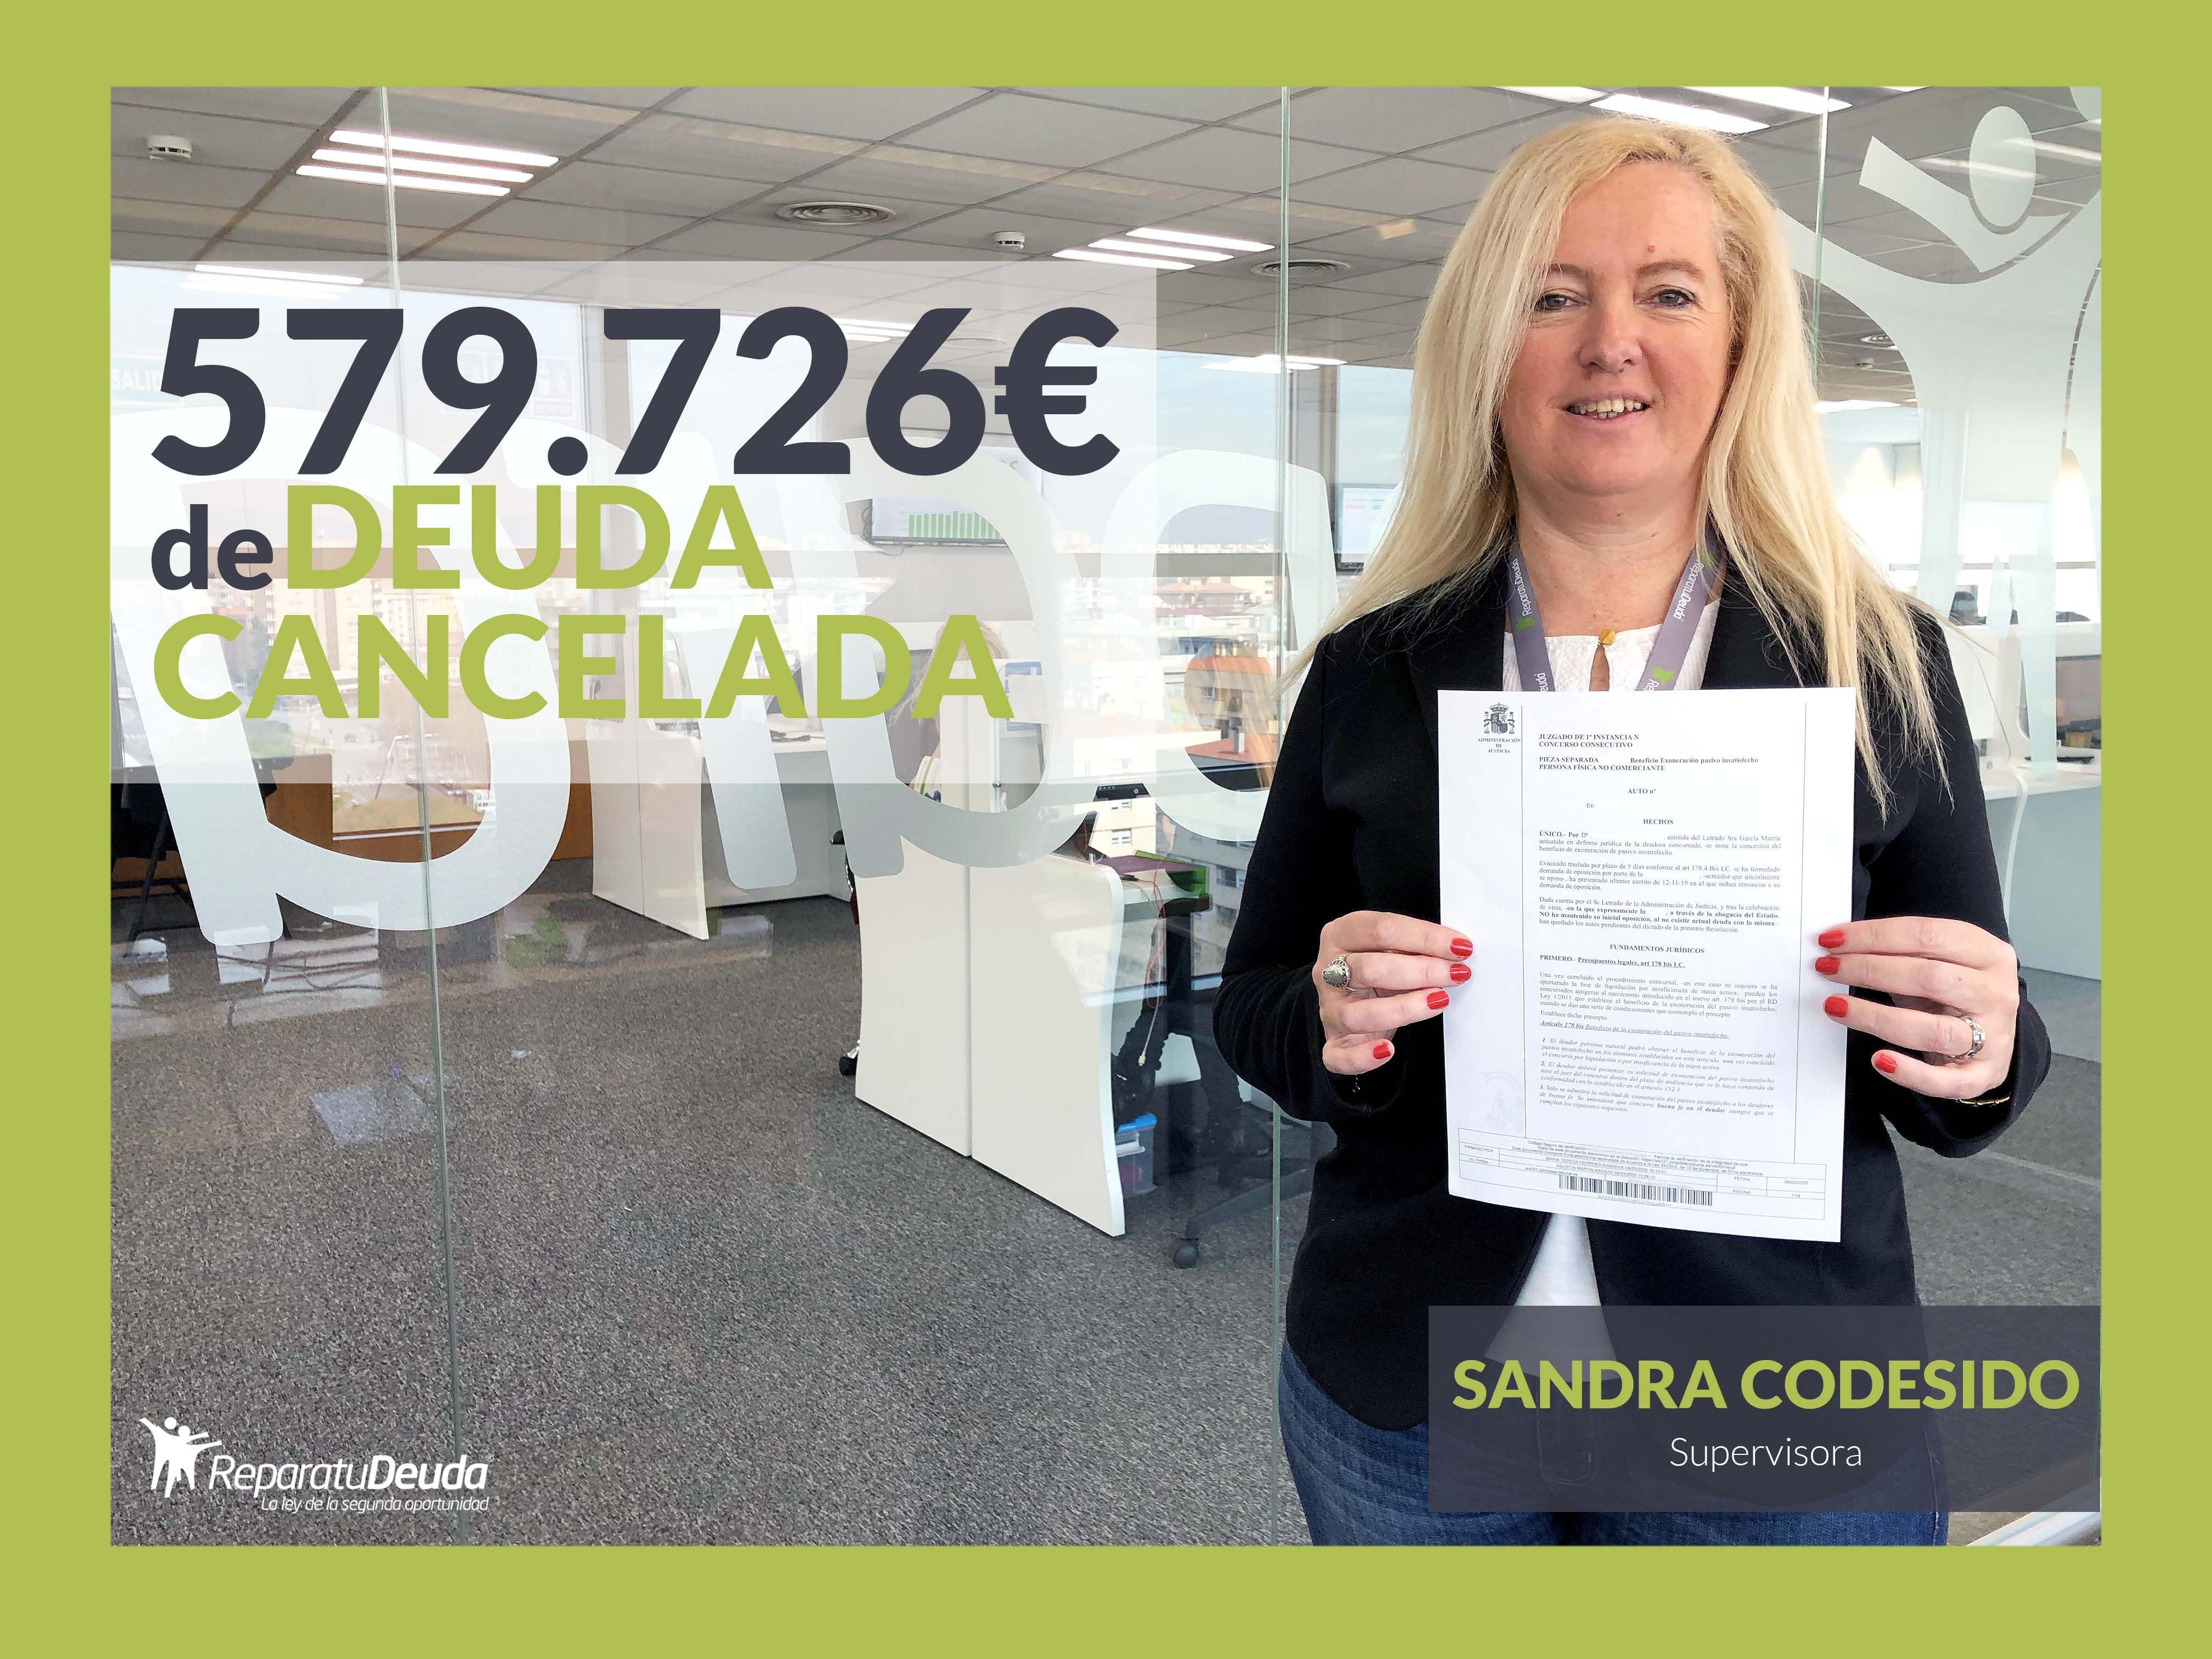 Repara tu Deuda abogados cancela una deuda de 579.726 ? en Valencia con la Ley de la Segunda Oportunidad